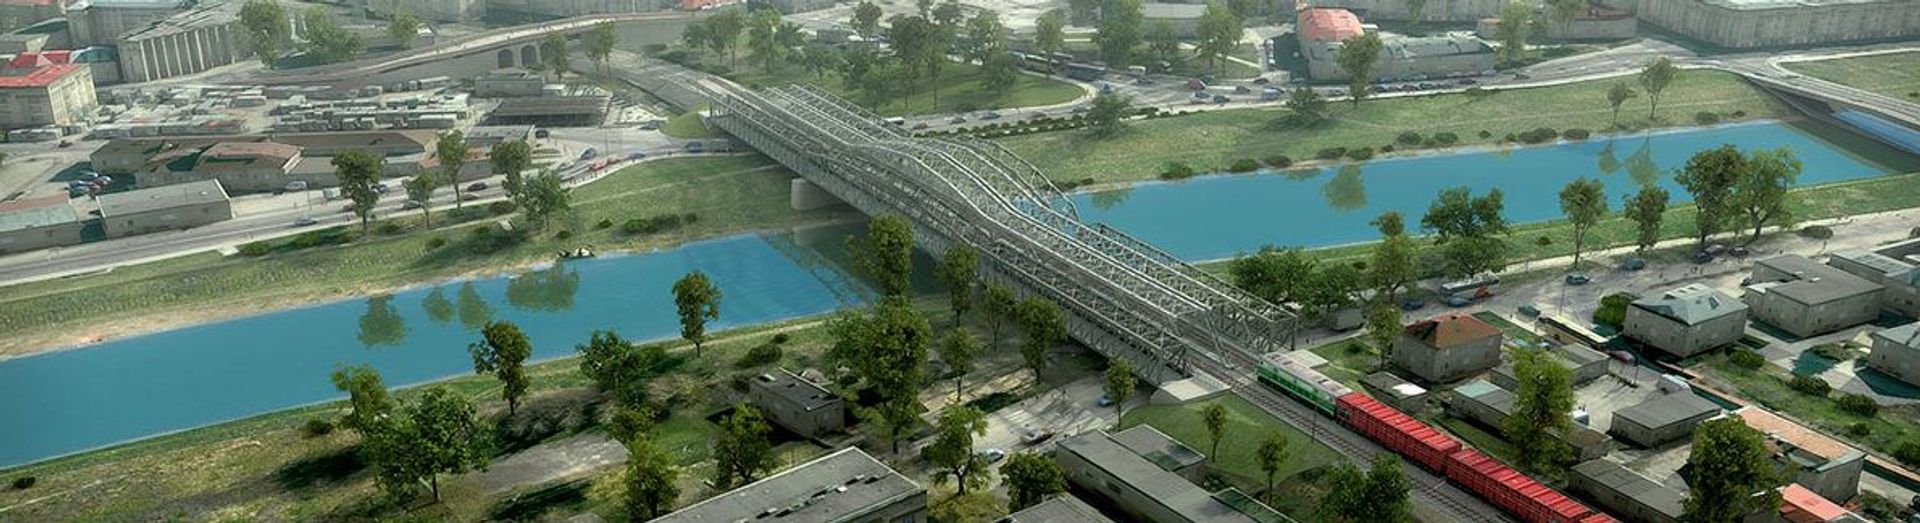 Nowy kolejowy most w Przemyślu nad Sanem usprawni transport kolejowy